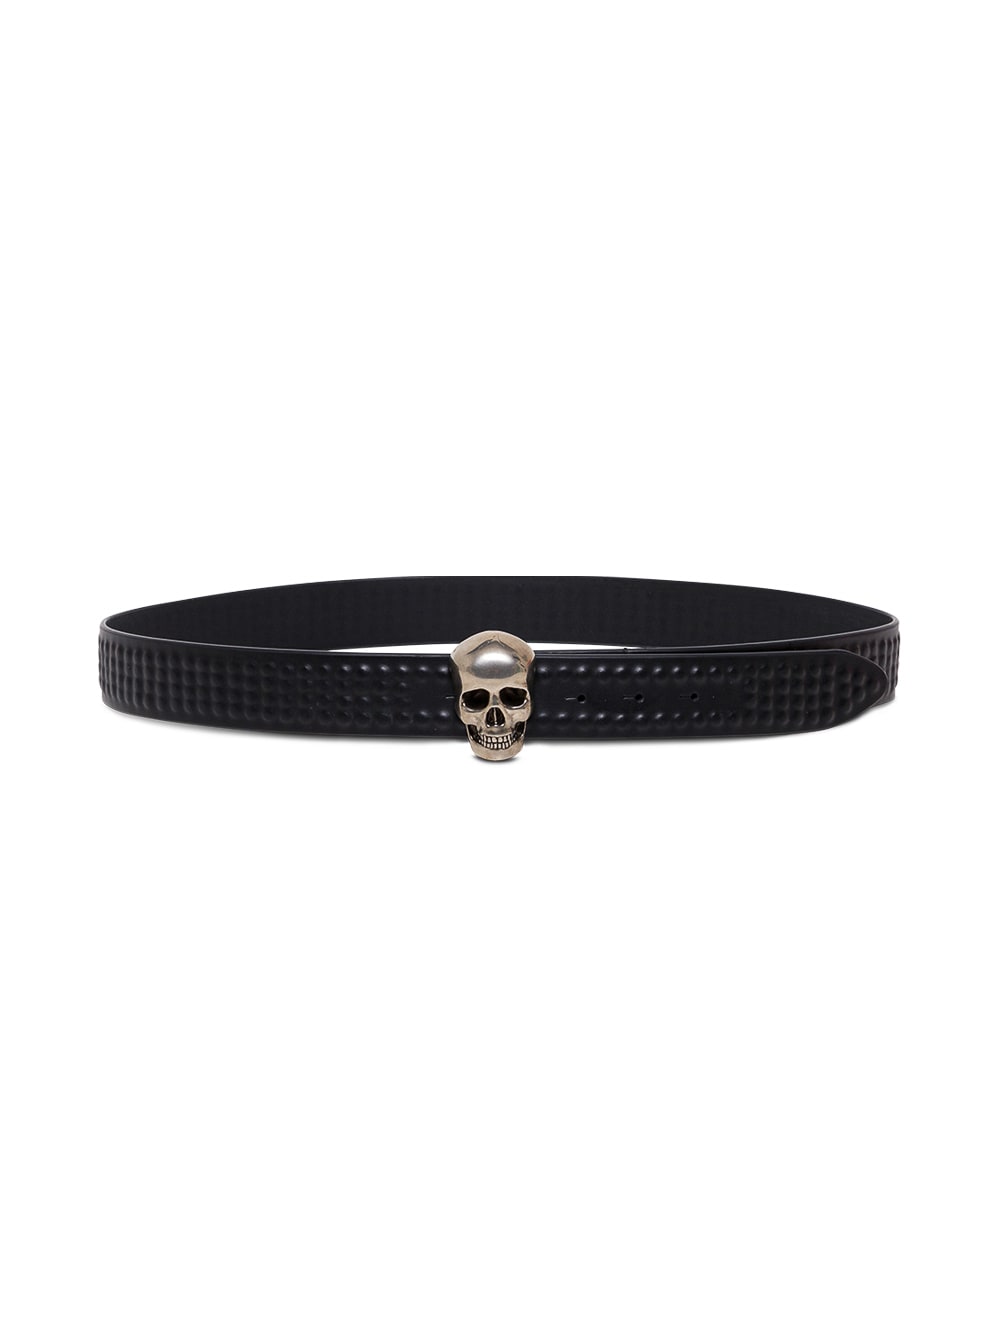 Alexander McQueen Black Leather Belt With Skull Buckle